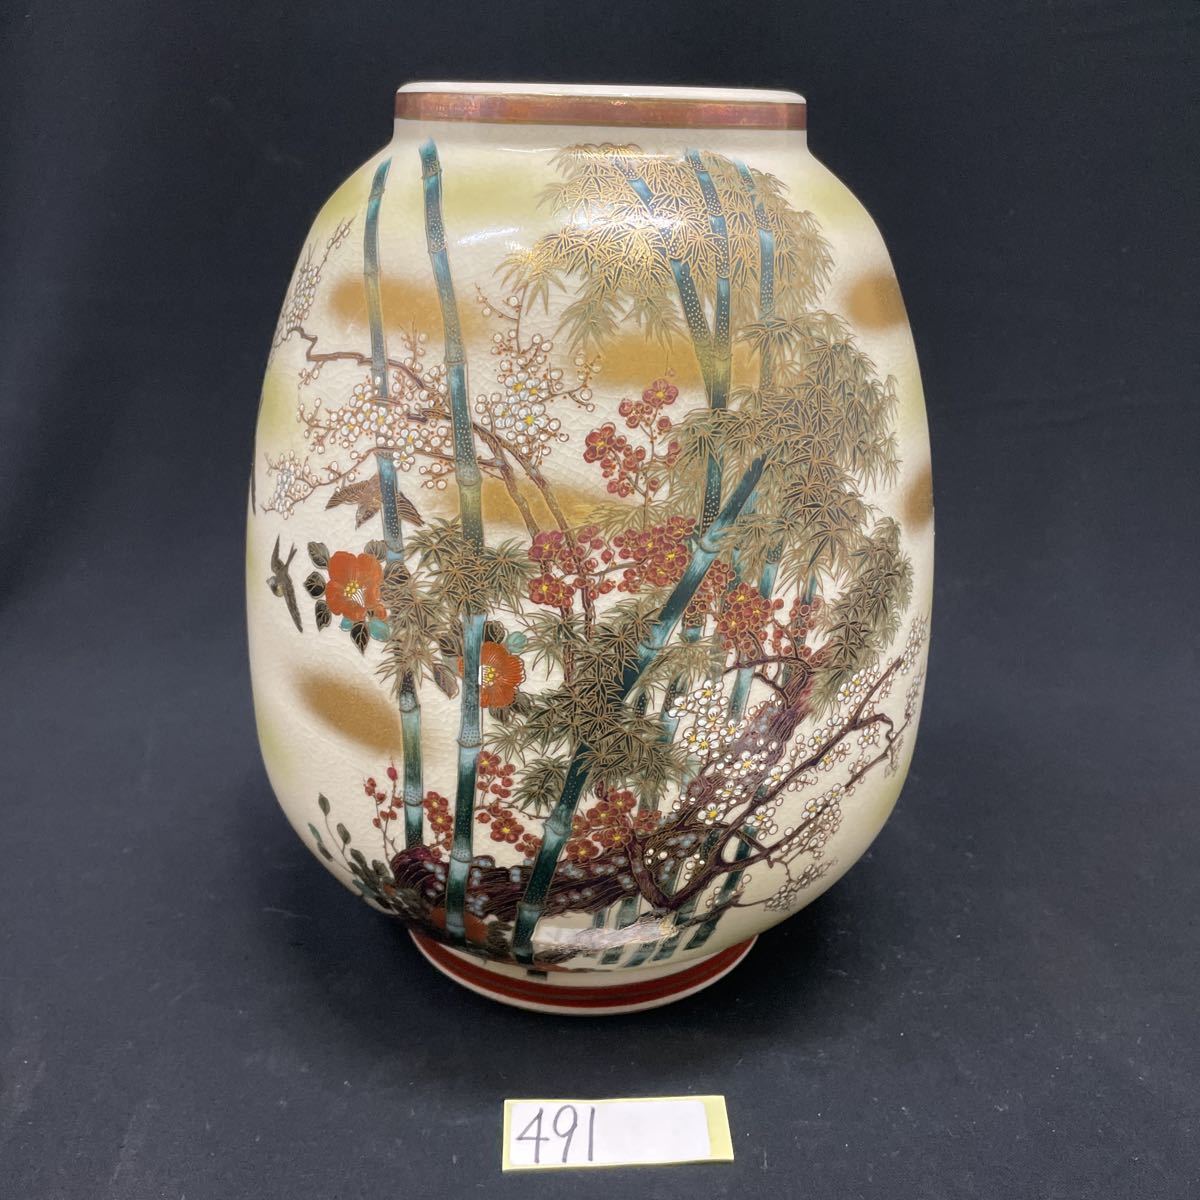 ○491○ 花瓶 九谷陶泉 高さ24.5cm item details | Yahoo! JAPAN